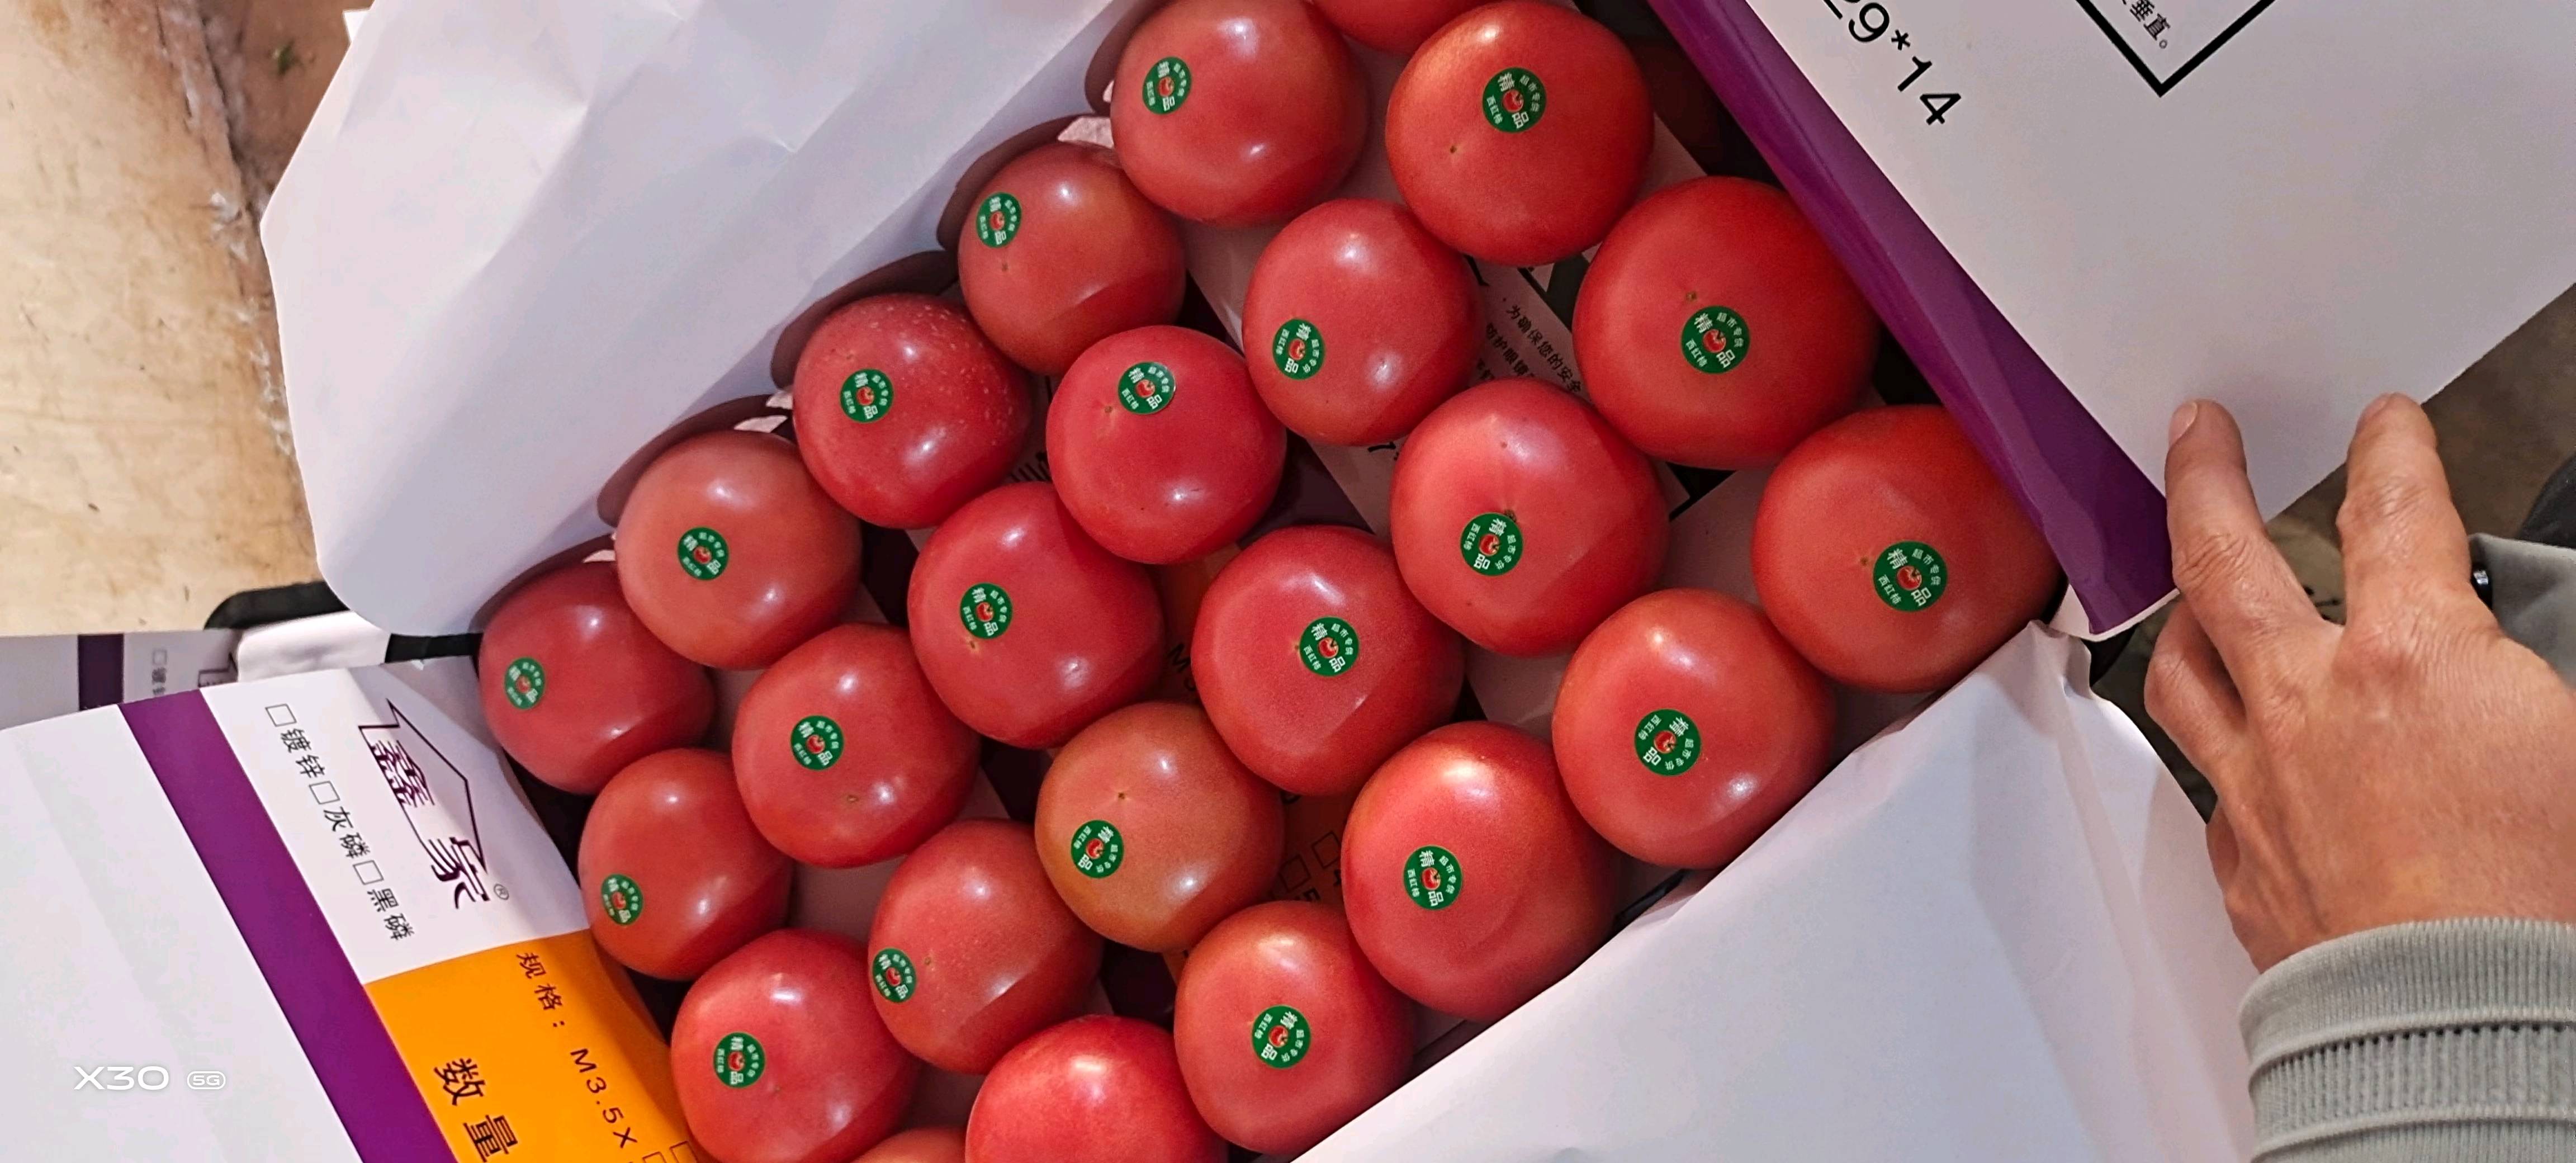 大量供应西红柿有需要的老板抓紧了还在持续涨价